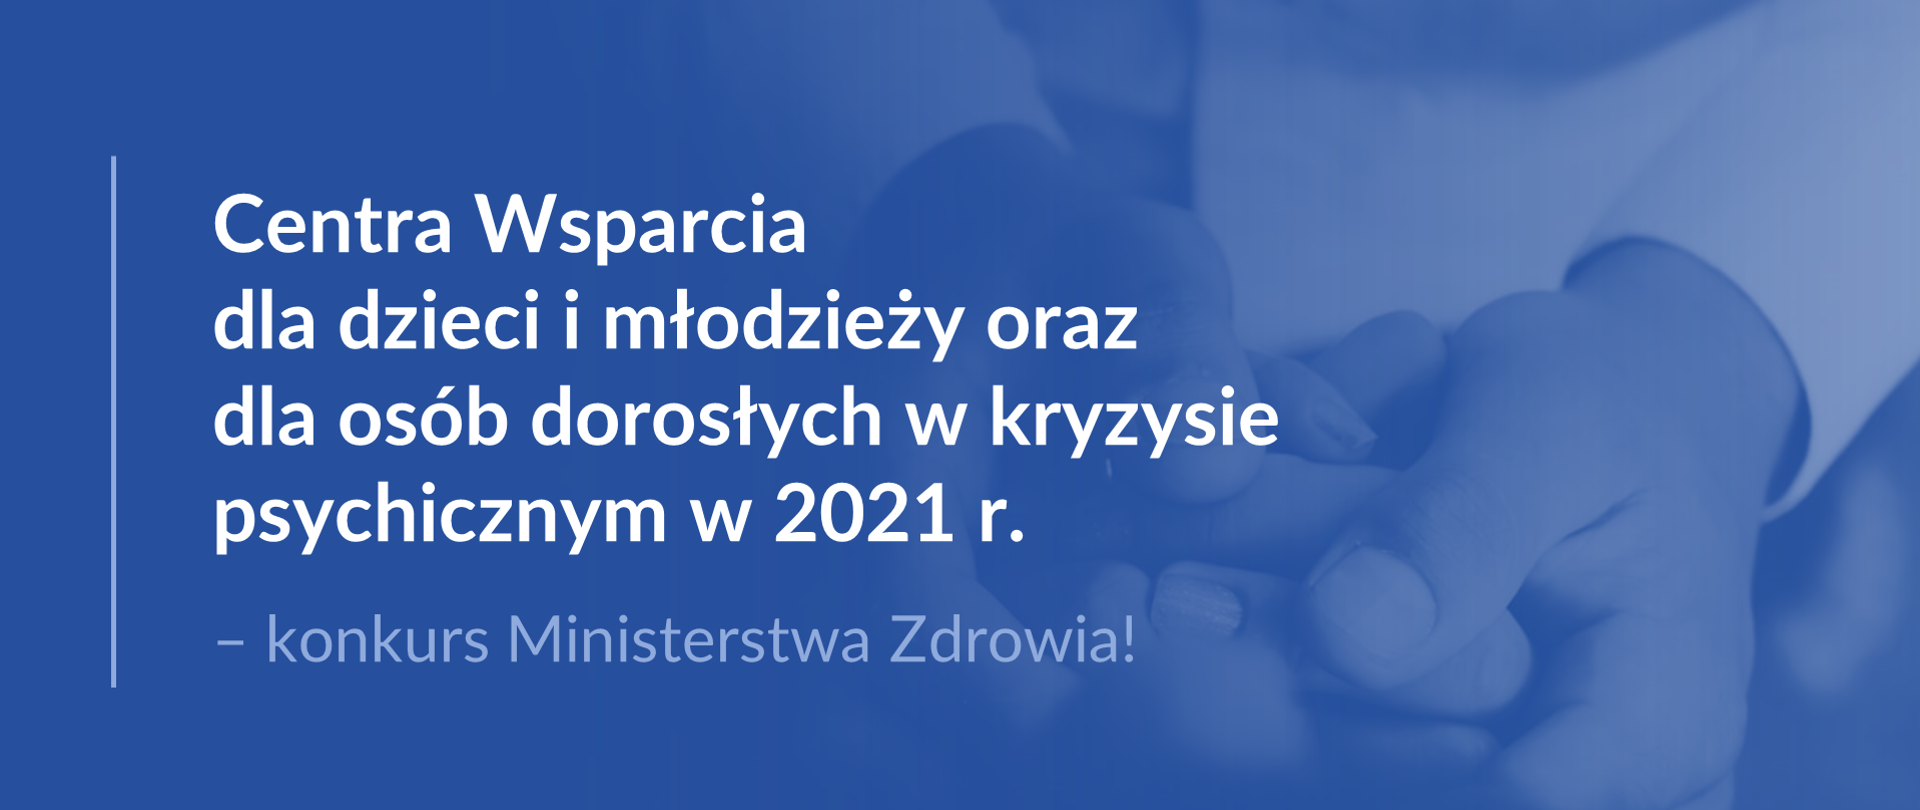 Grafika z tekstem: "Centra Wsparcia dla dzieci i młodzieży oraz dla osób dorosłych w kryzysie psychicznym w 2021 r. – konkurs Ministerstwa Zdrowia!"